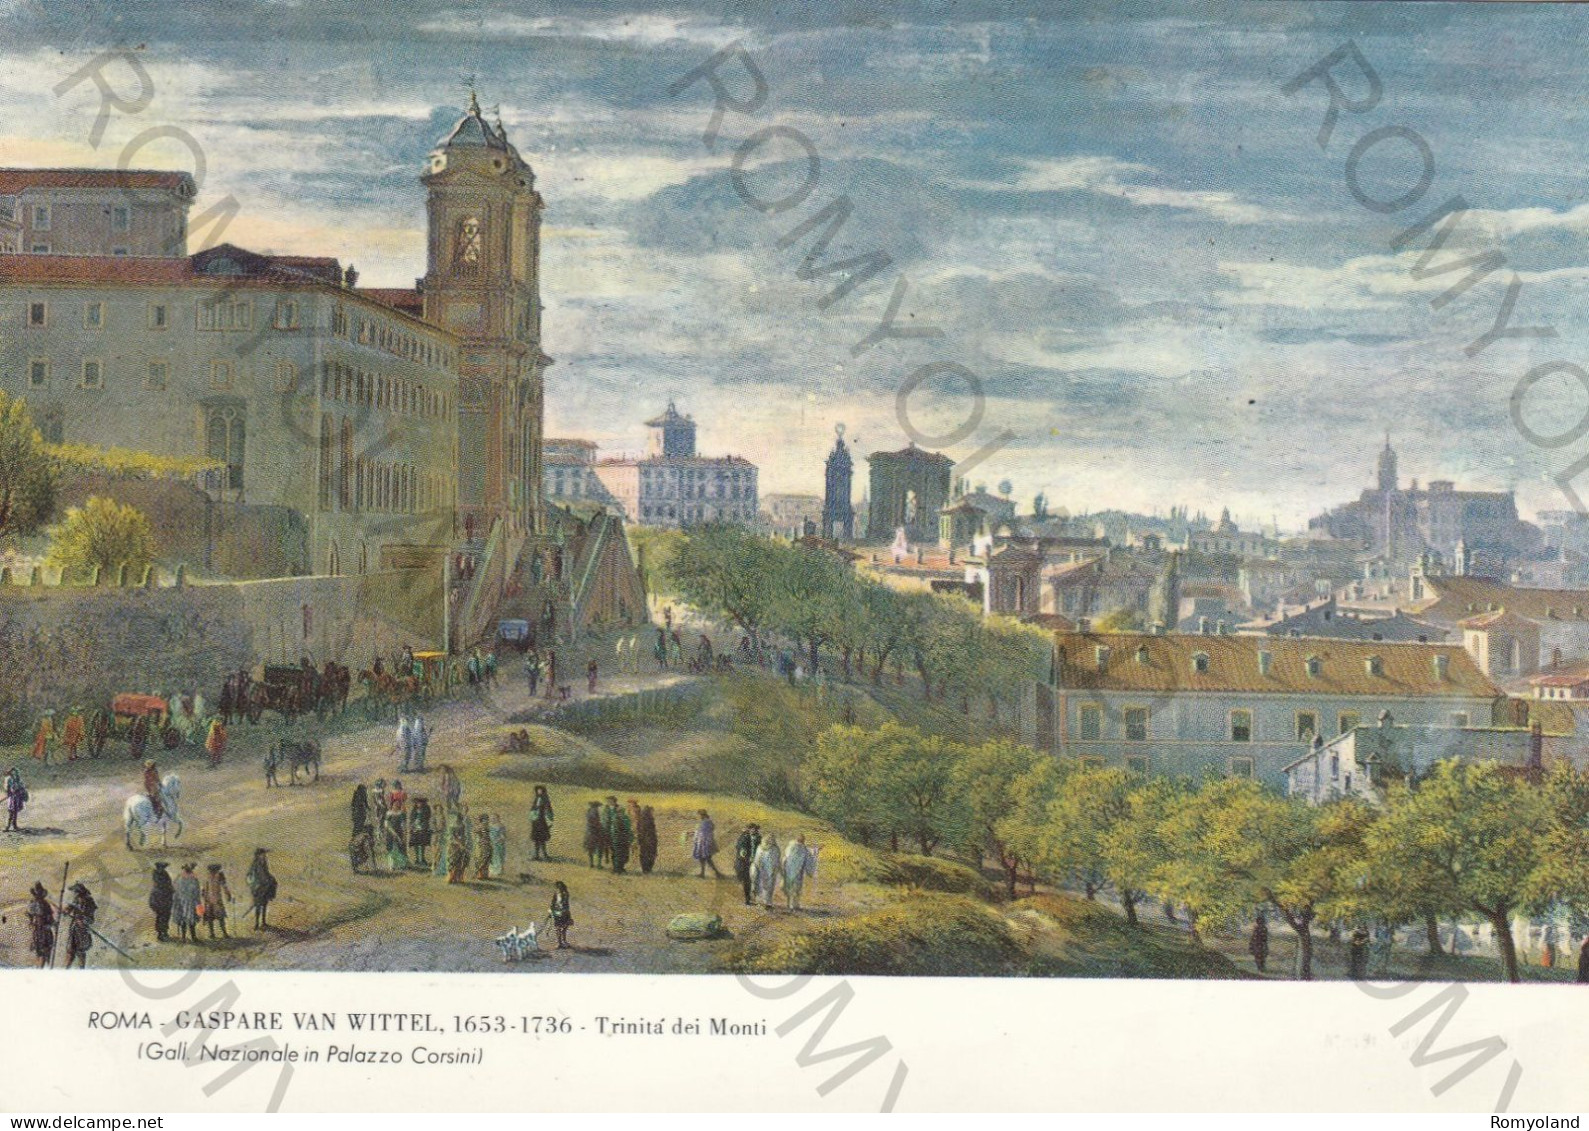 CARTOLINA  ROMA,LAZIO-GALL.NAZIONALE IN PALAZZO CORSINI-GASPARE VAN WITTEL 1653-1736 TRINITA DEI MONTI-NON VIAGGIATA - Mostre, Esposizioni